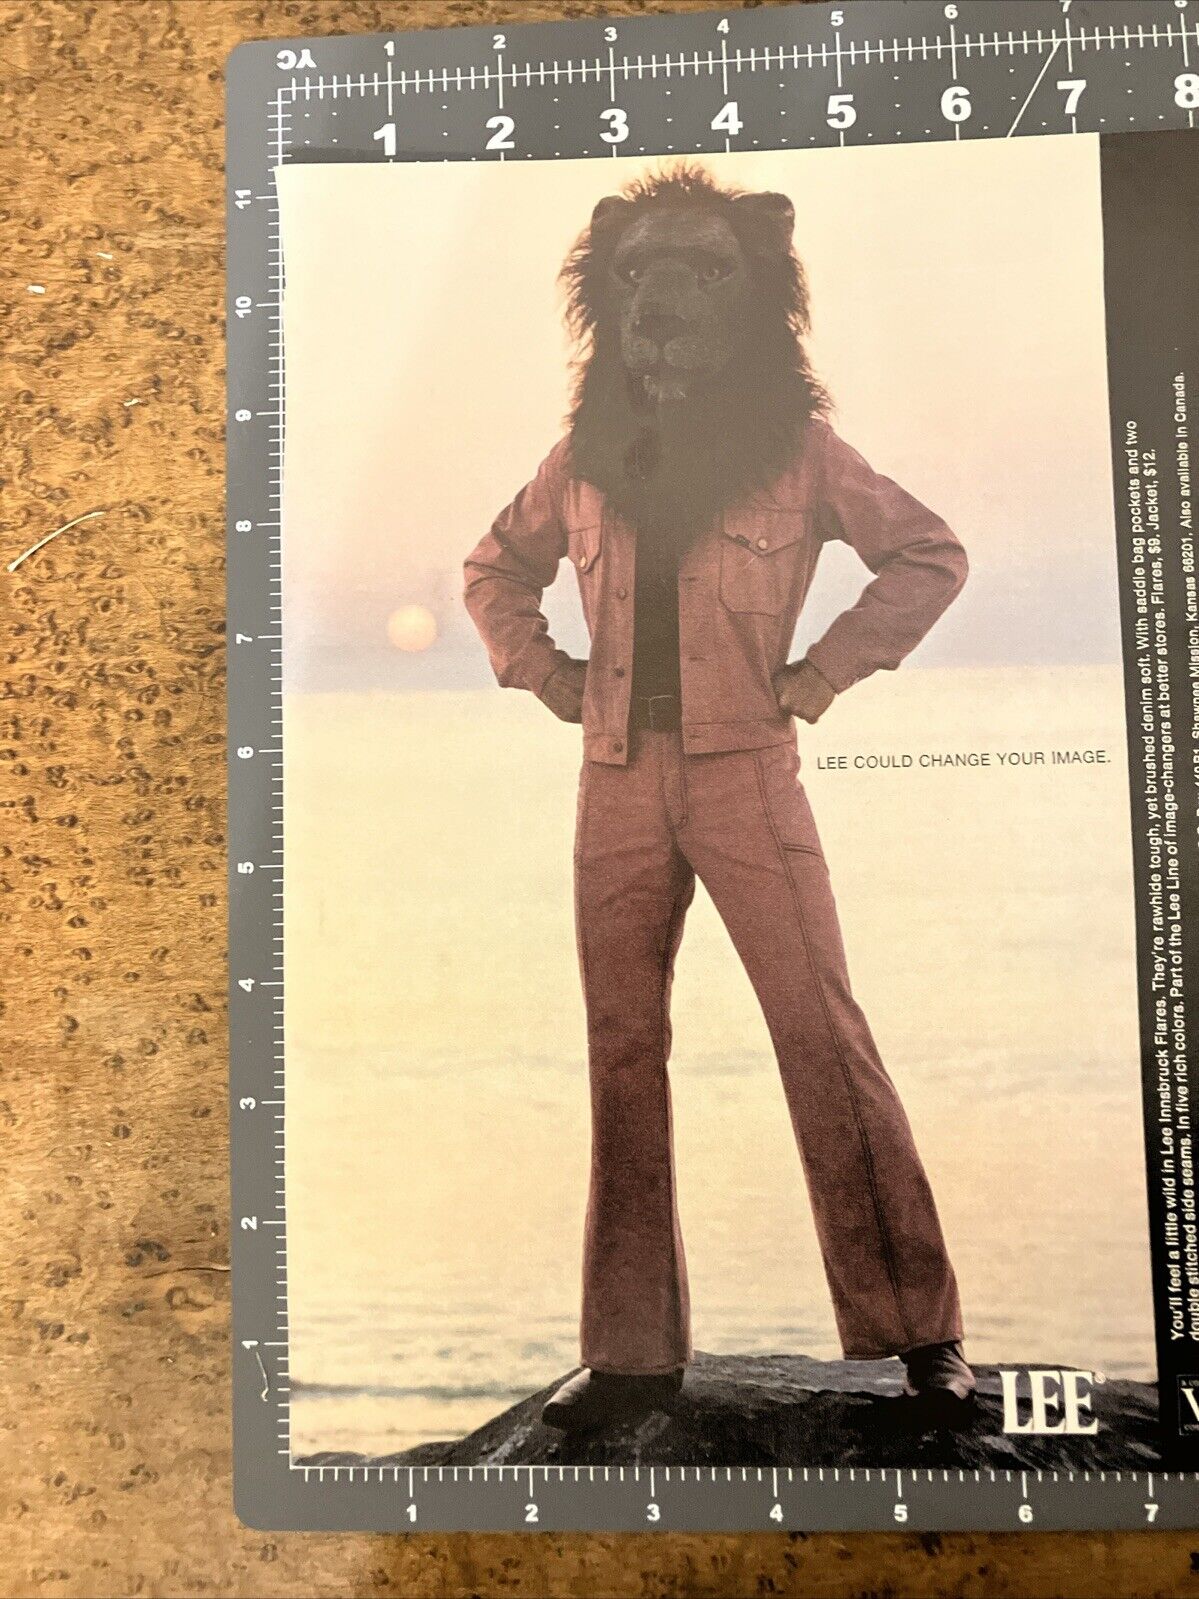 Lee Jeans Mens Lion Head 1971 Vintage Magazine Print Ad Change Your Image Pants